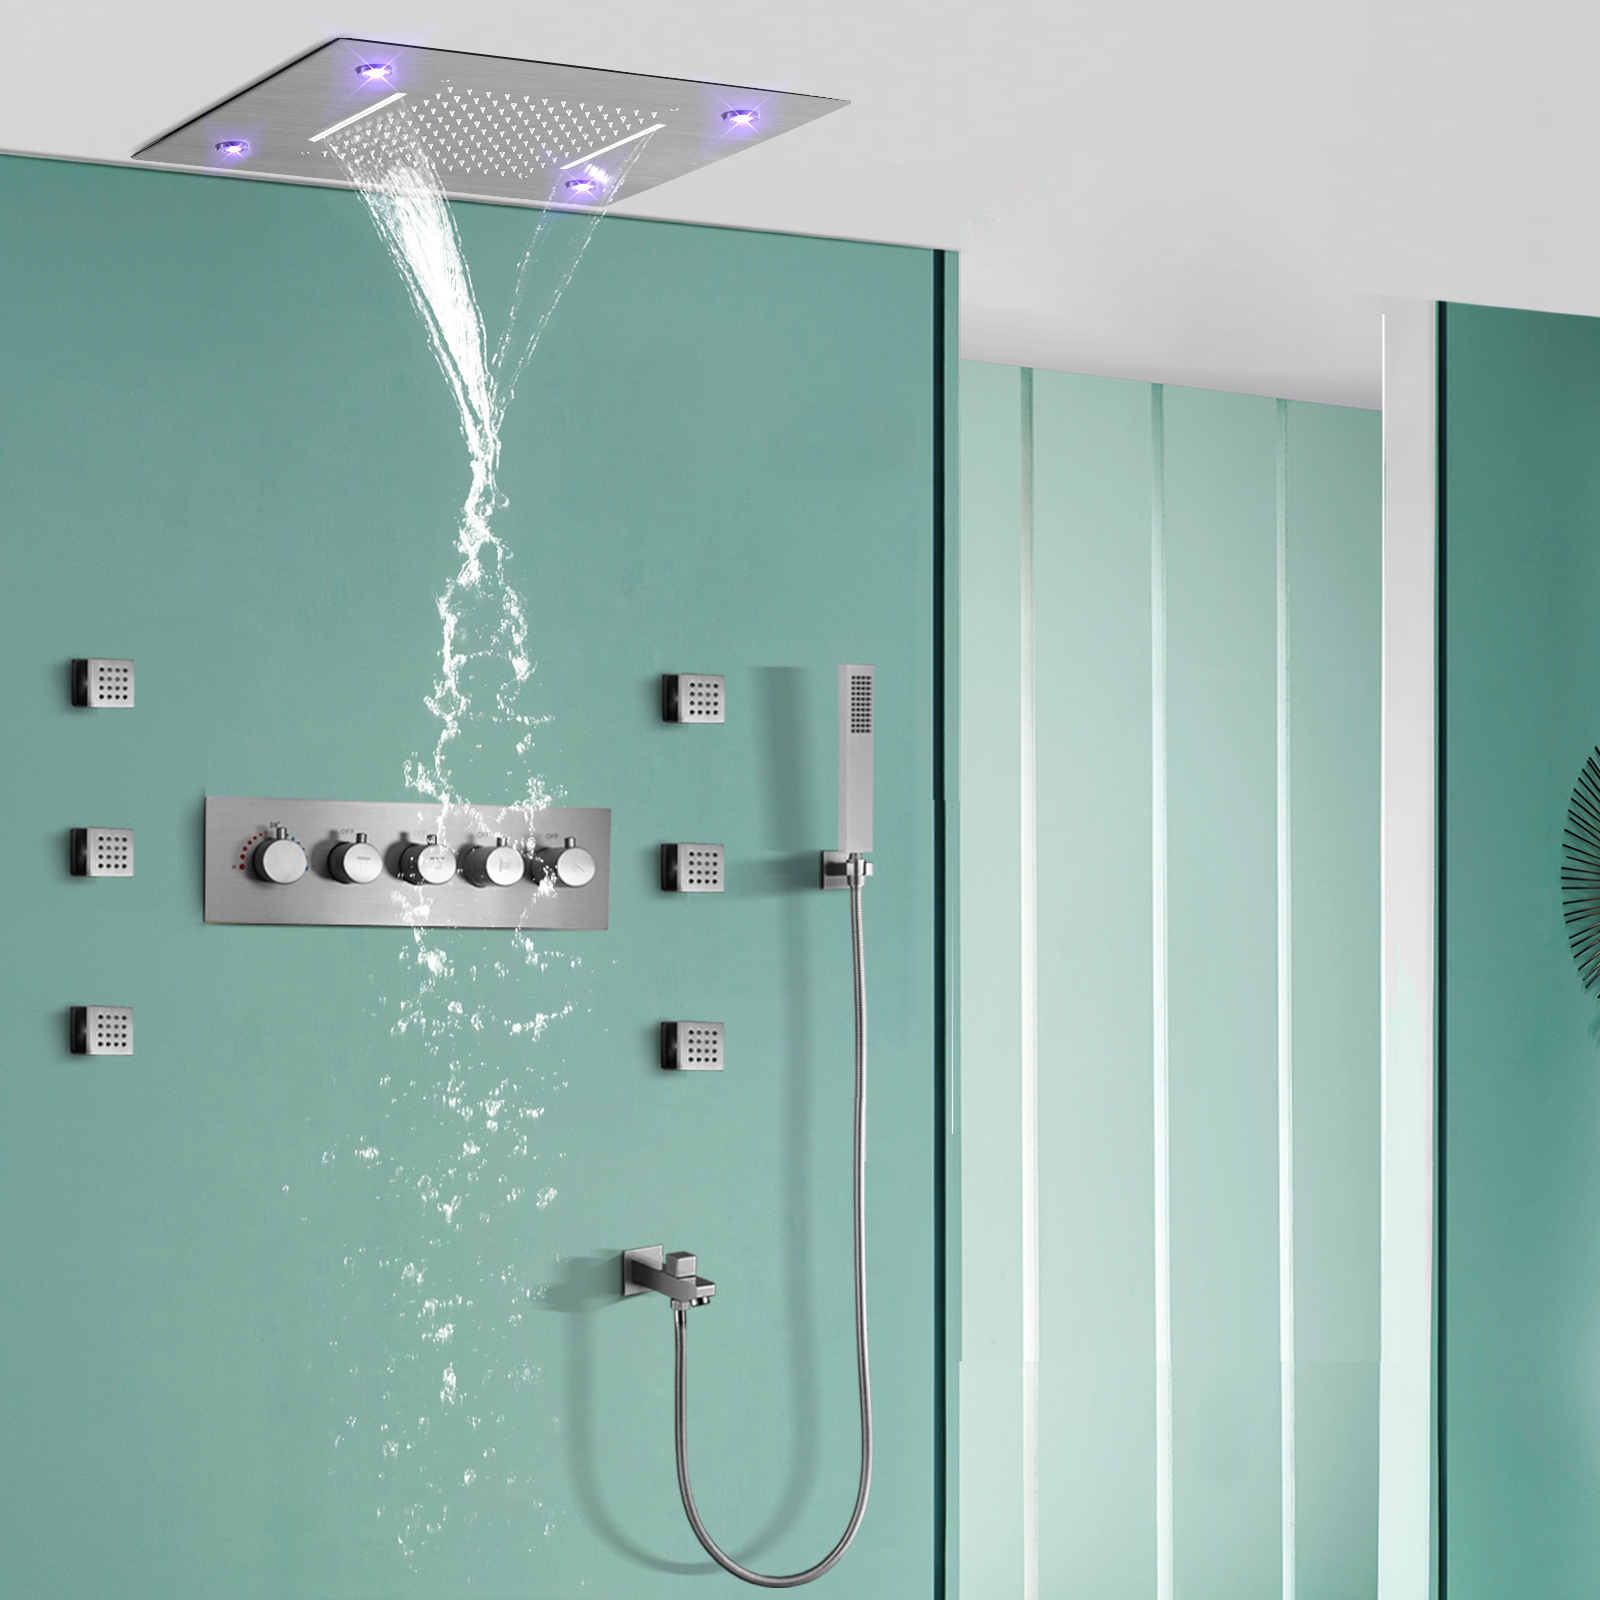 نحى درجة حرارة ثابتة المطر شلال الحمام أدوات دش التحكم عن بعد LED أخفى فوهة مخفية غرفة استحمام وتدليك مجموعة